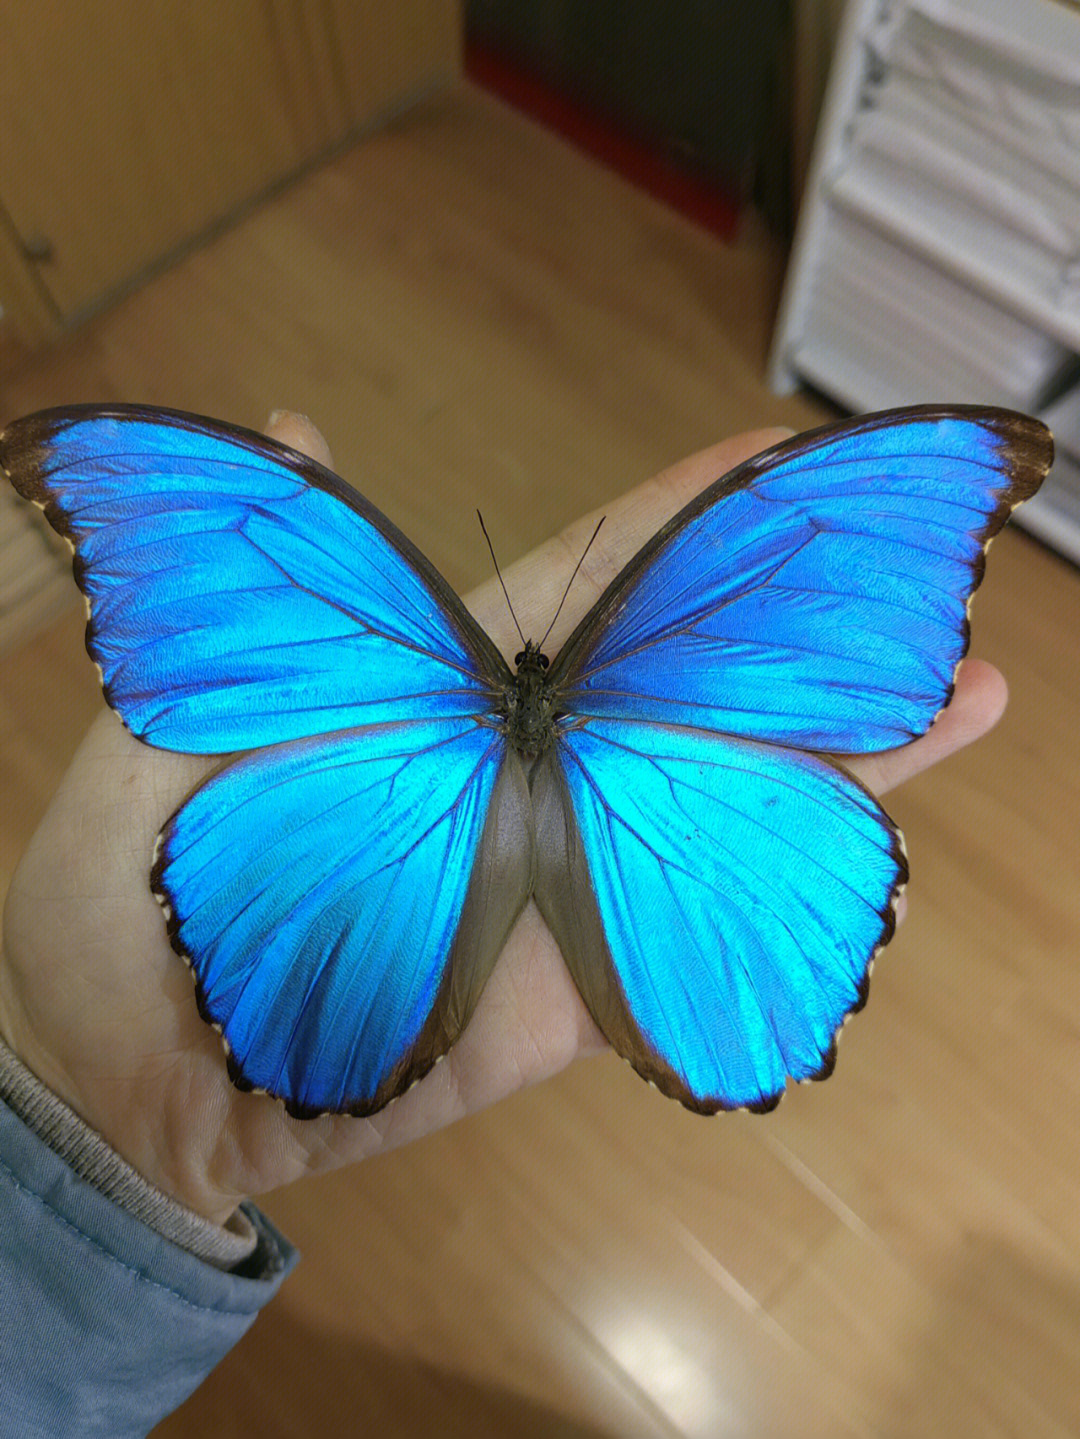 这只蓝闪蝶品相不错,唯一不足就是有下翅有一处小